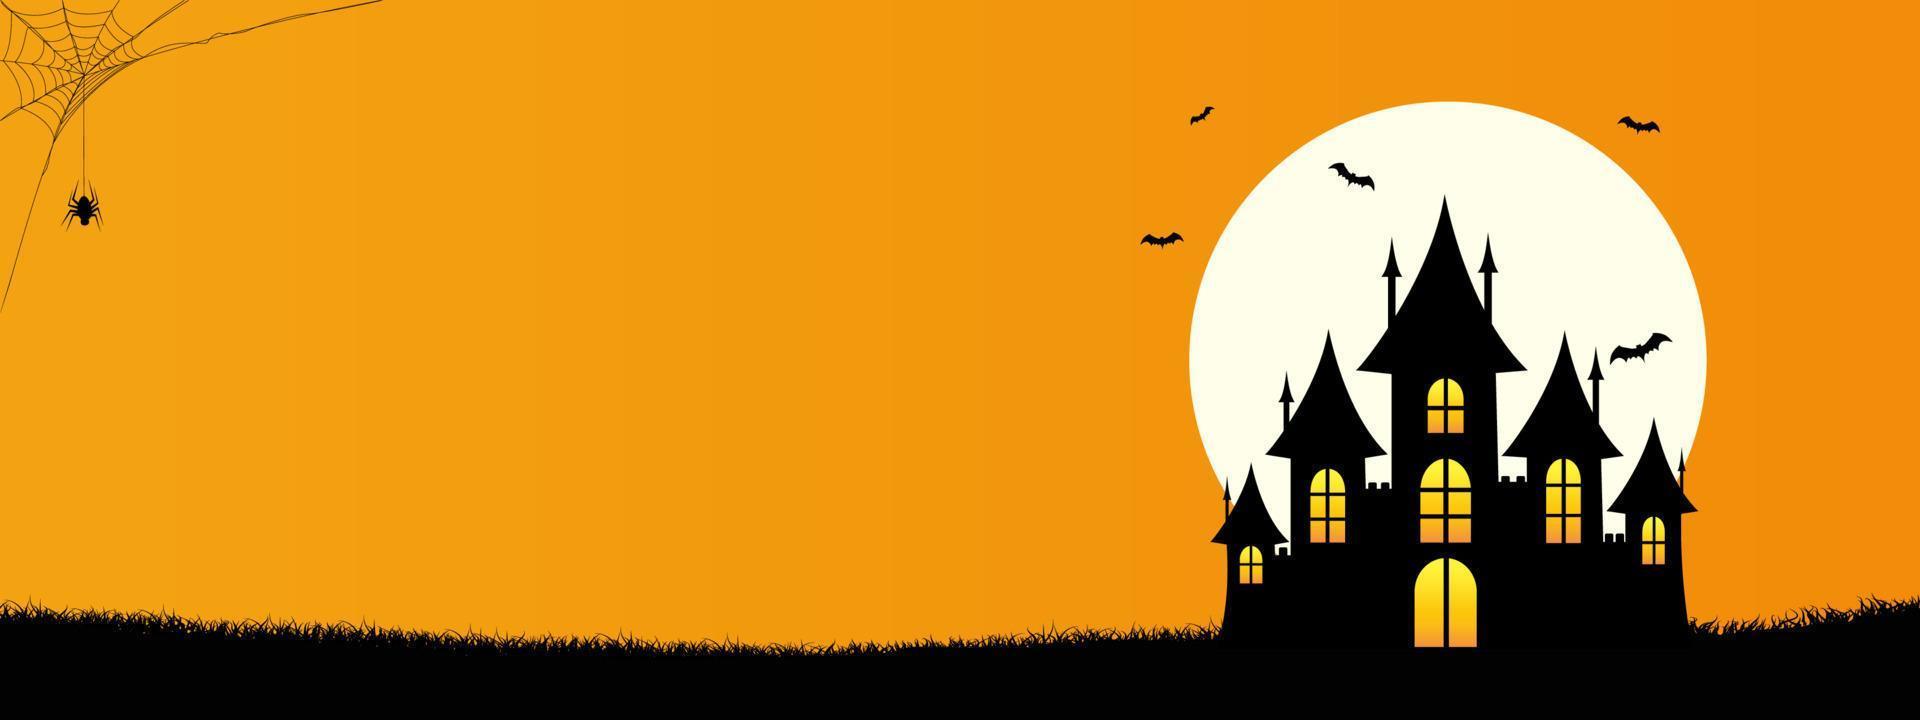 fundo de banner de modelo de feliz dia das bruxas com copyspace, design minimalista com o castelo, morcego, aranha da web e lua cheia em fundo de cor laranja vetor